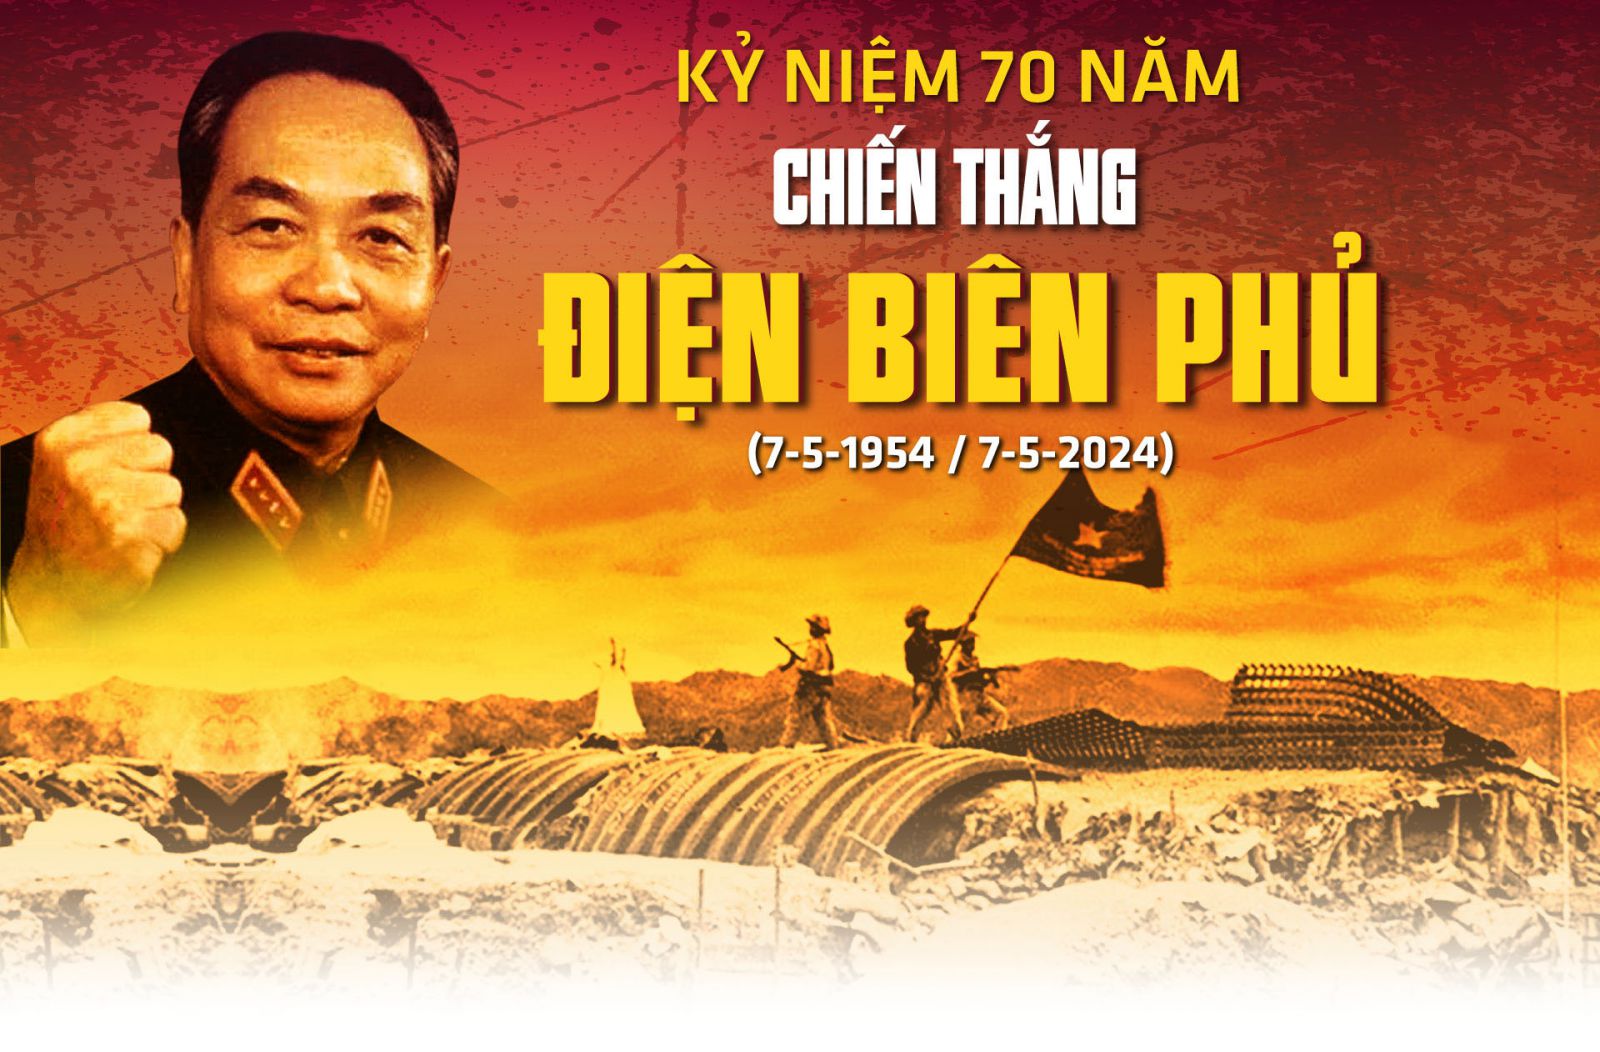 Kỉ niệm 70 năm chiến thắng Điện Biên Phủ